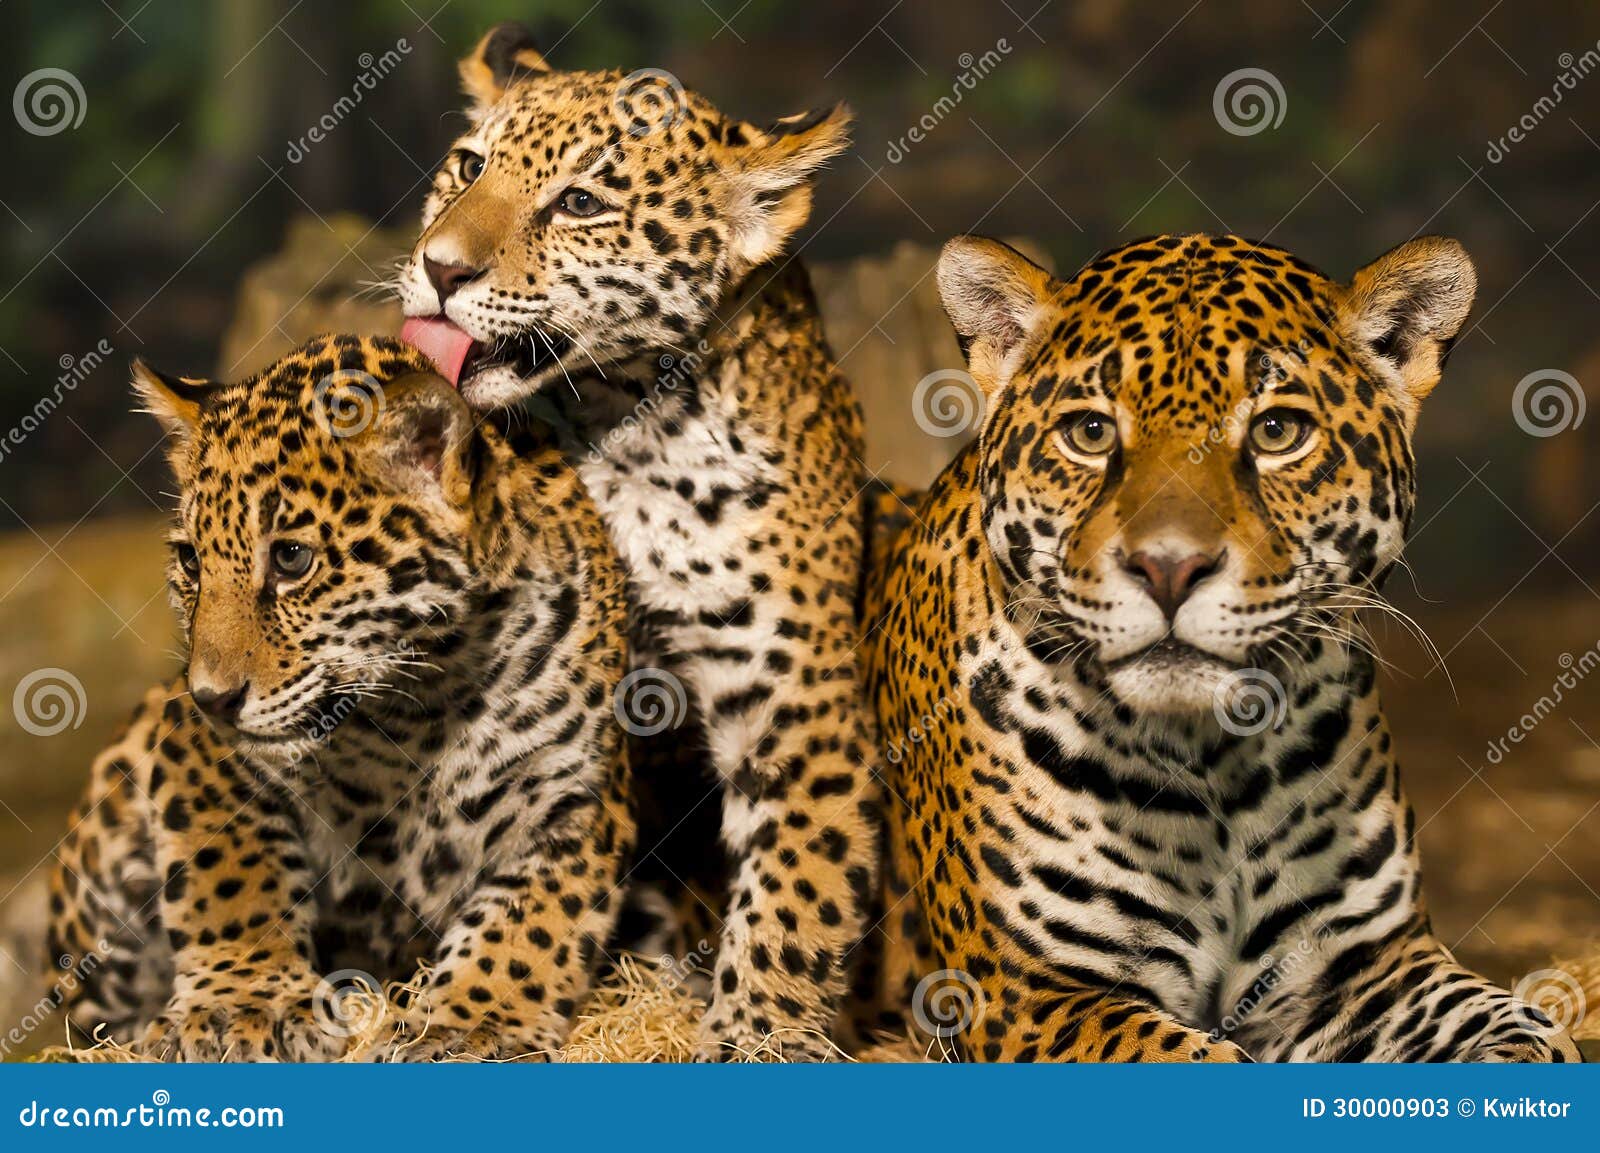 De Familie Van Jaguar Stock Afbeelding. Image Of Luipaard - 30000903